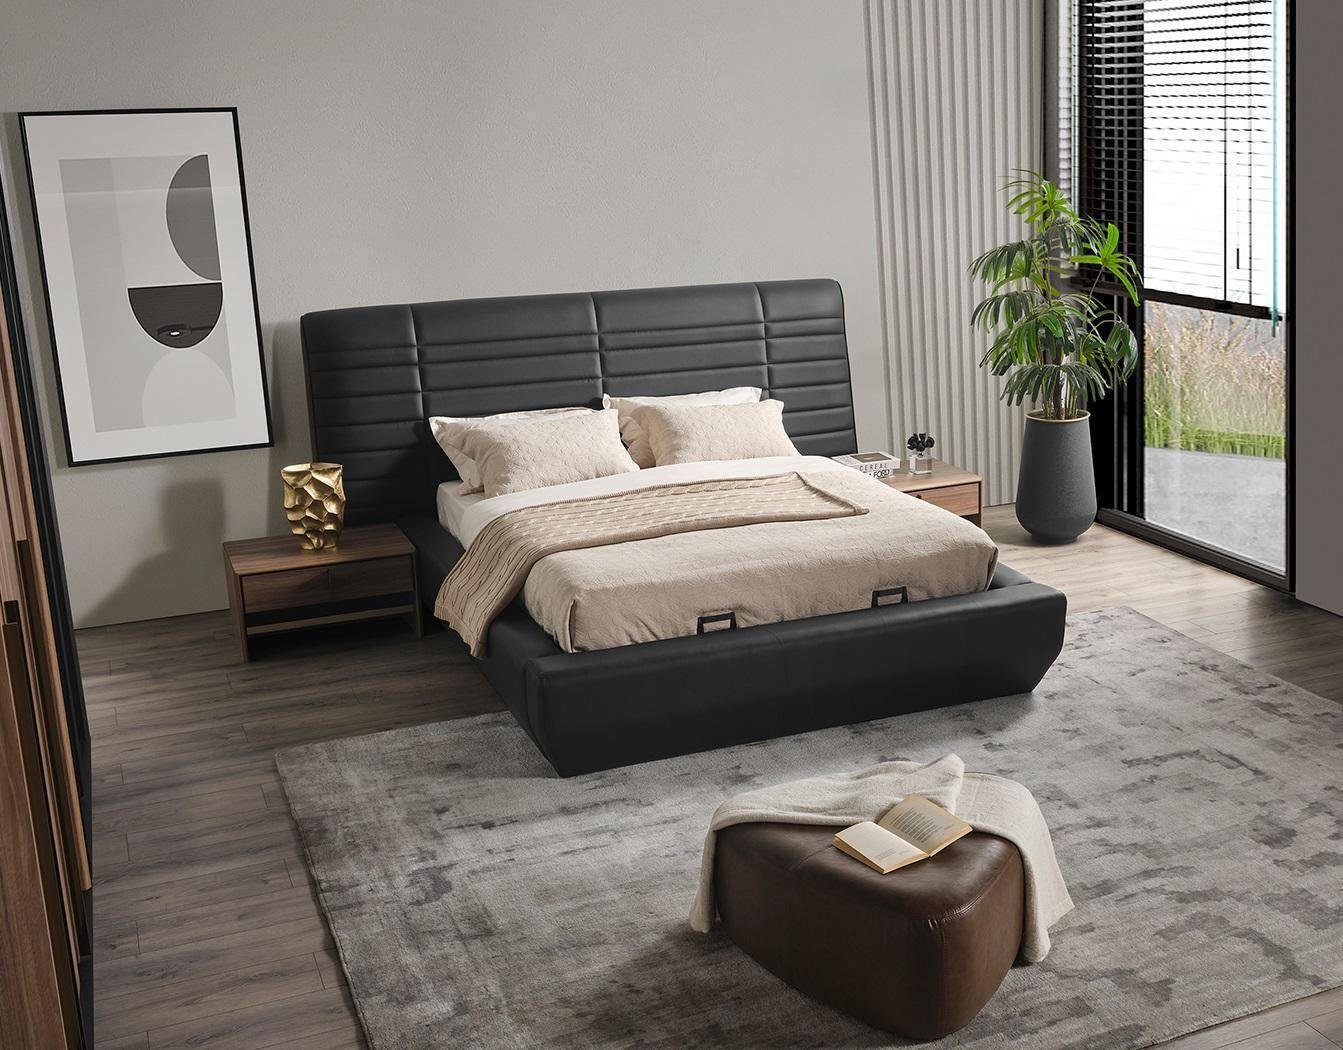 JVmoebel Schlafzimmer-Set Schlafzimmer Set Europe 2x Nachttische Bett Luxus neu schwarz 3tlg In Made Design